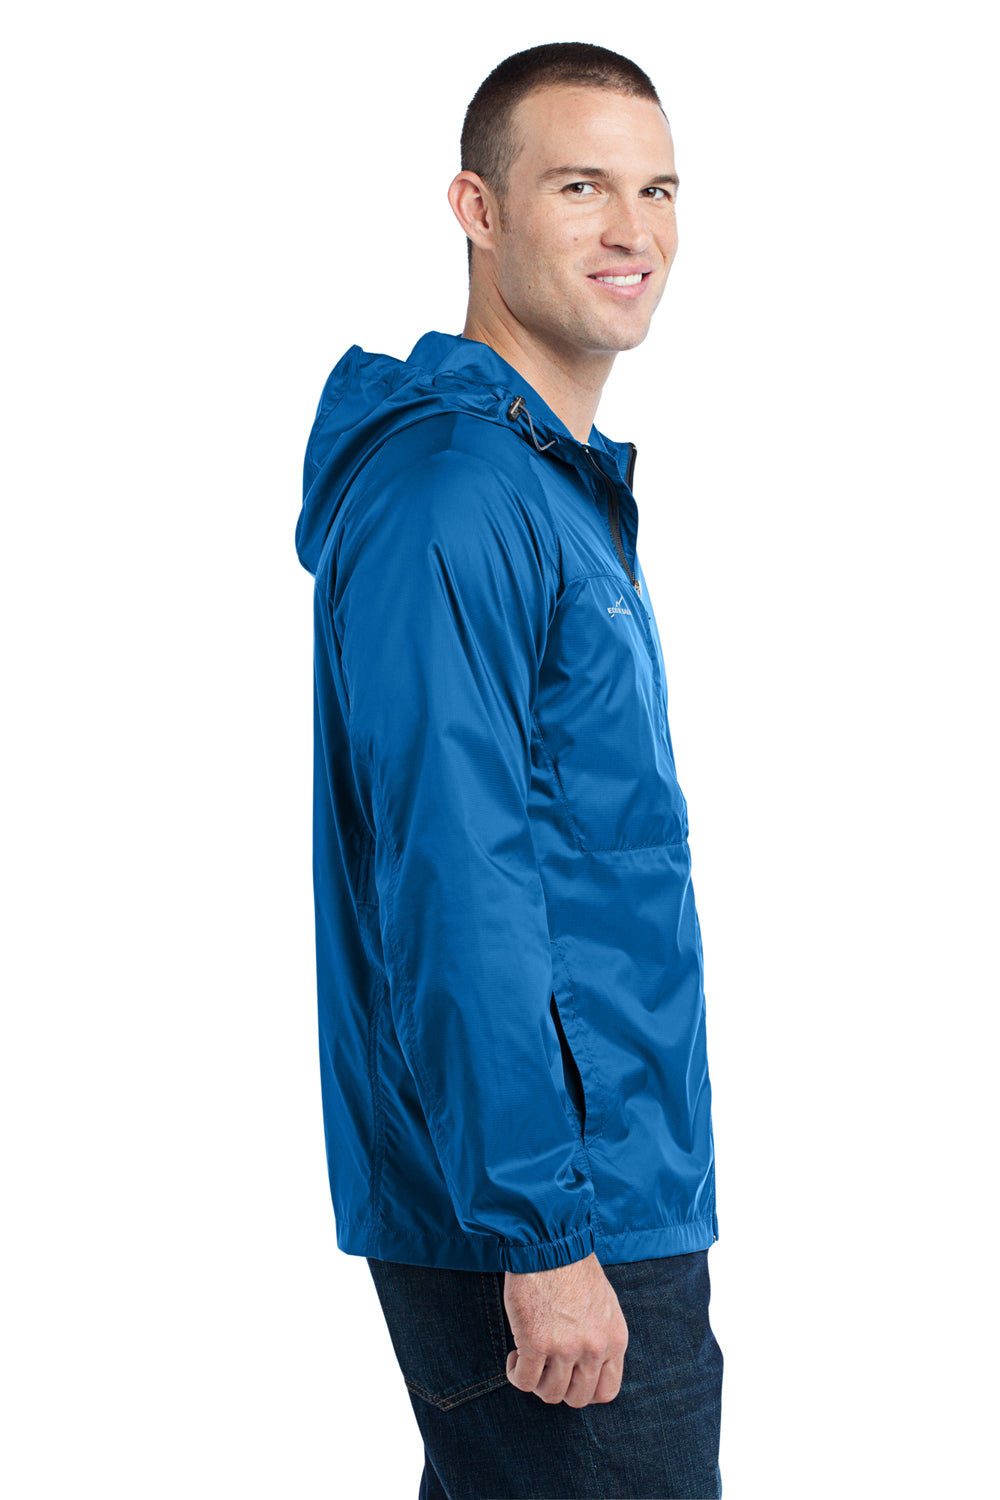 Eddie Bauer EB500 Mens Packable Wind Resistant Full Zip Hooded Wind Jacket Brilliant Blue Side